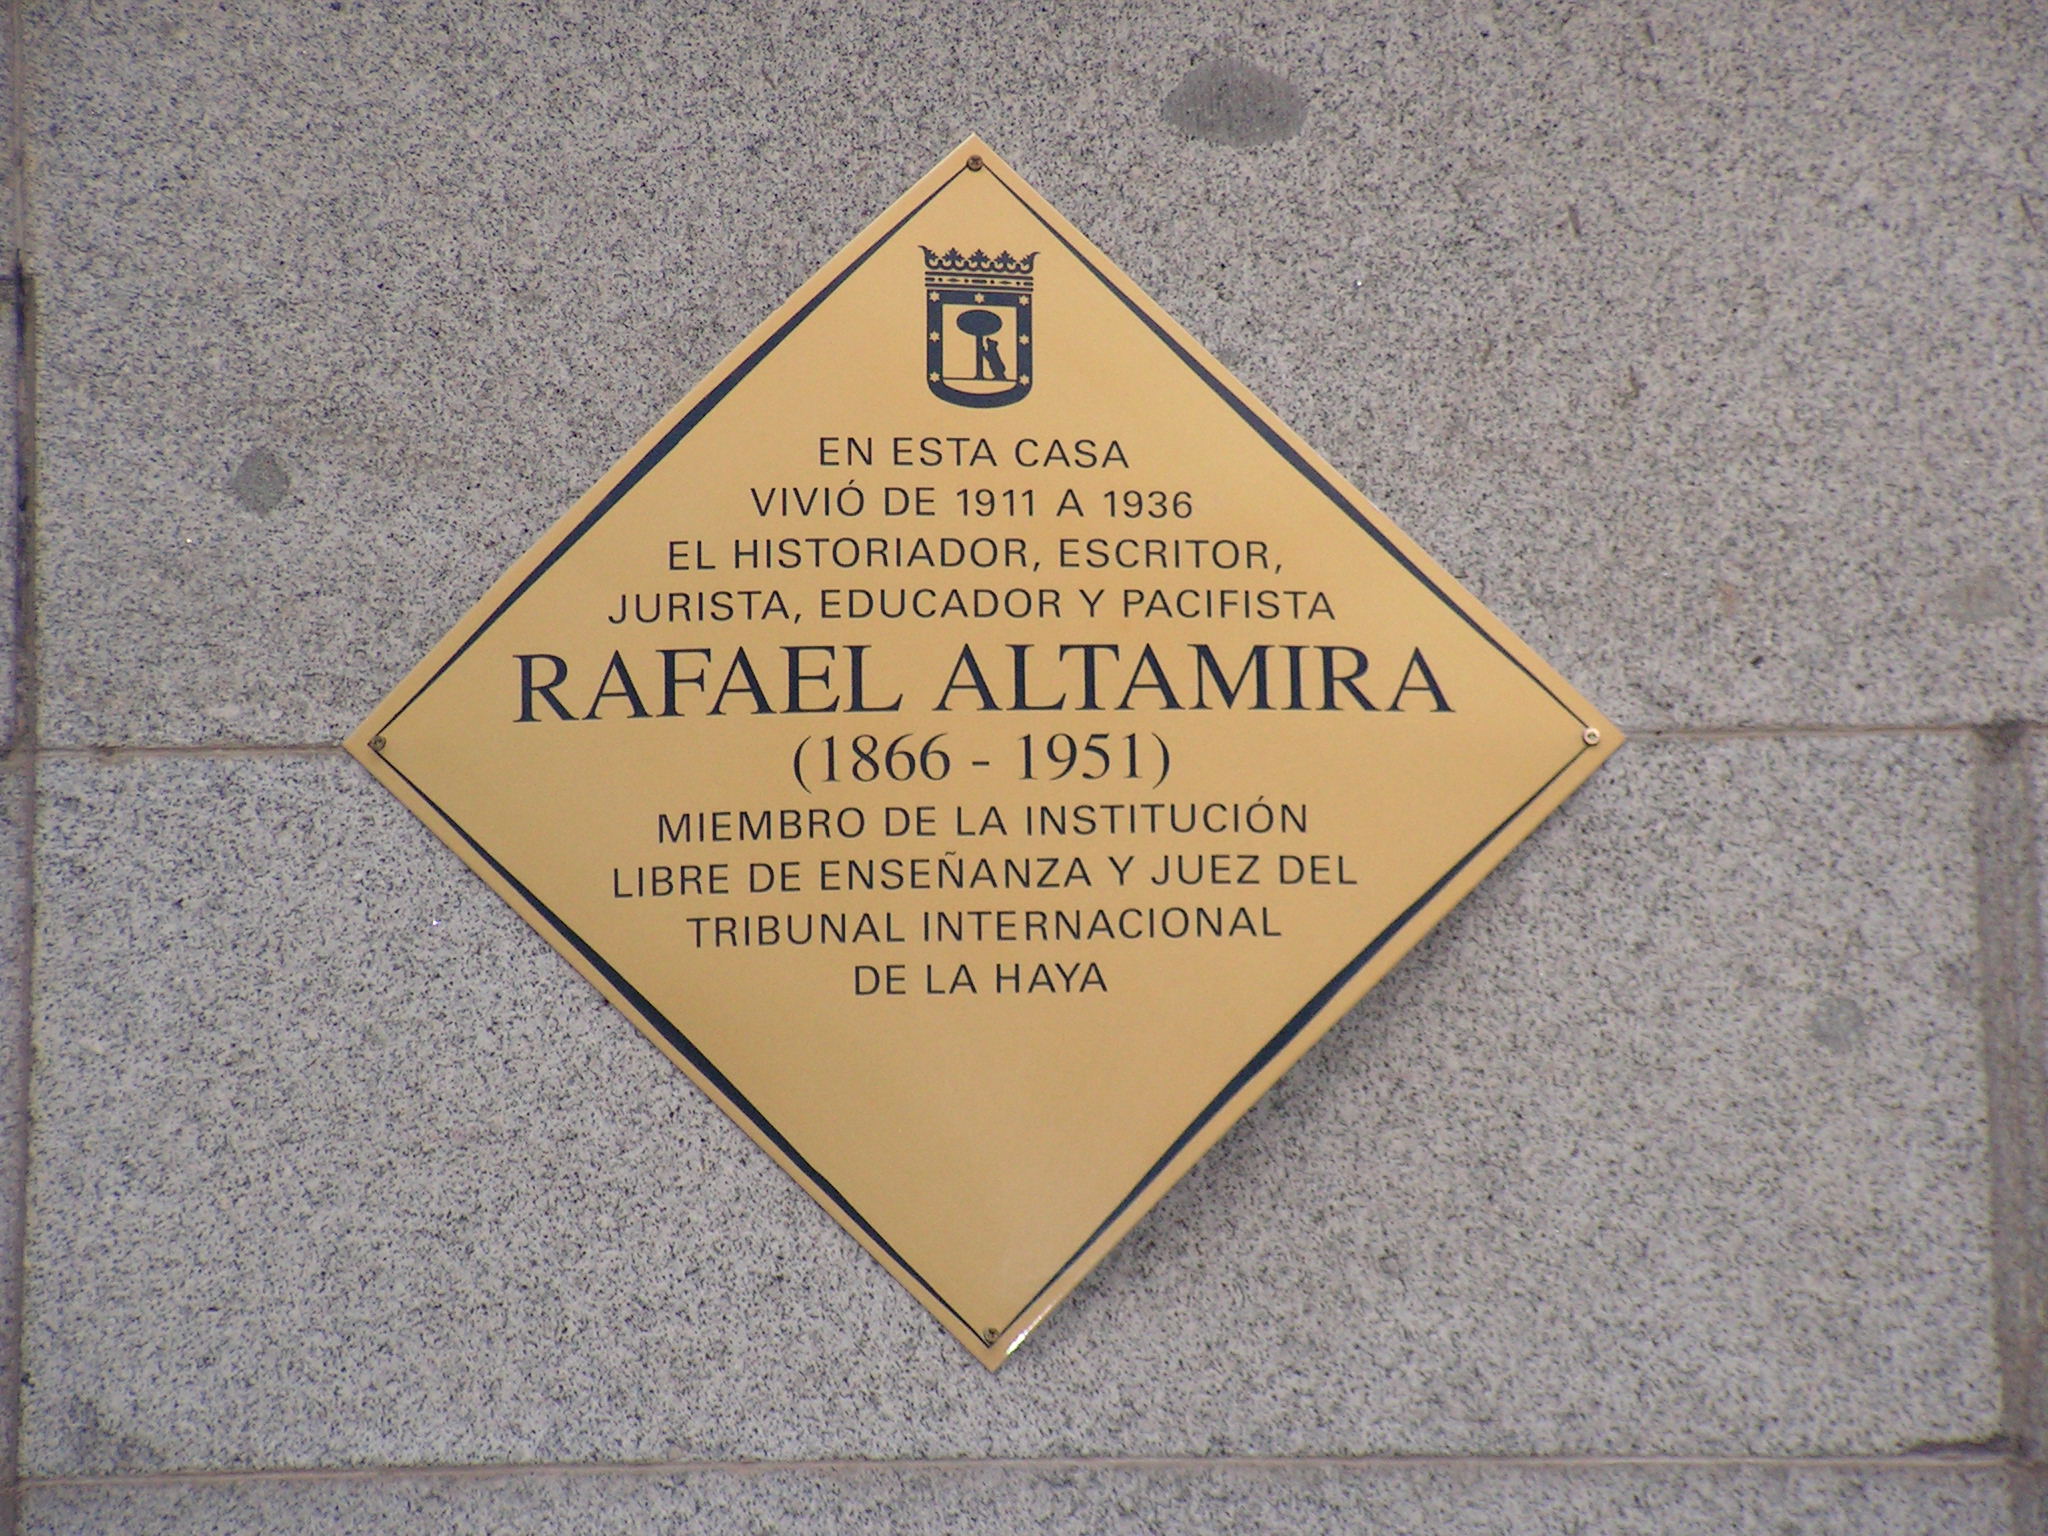 Rafael Altamira